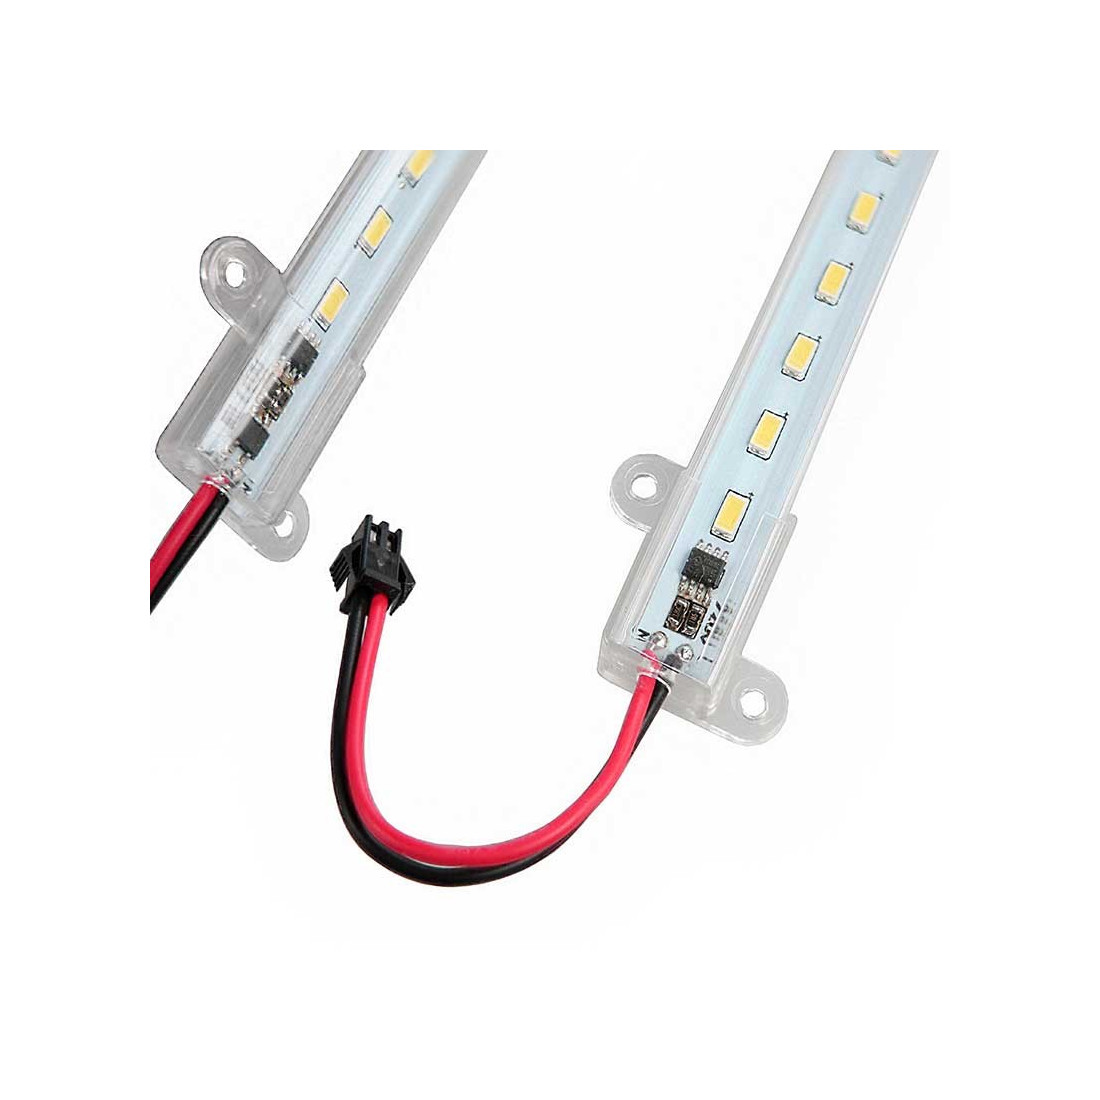 Réglette LED Ecodelie 230 volts de 17 watts longueur 900mm